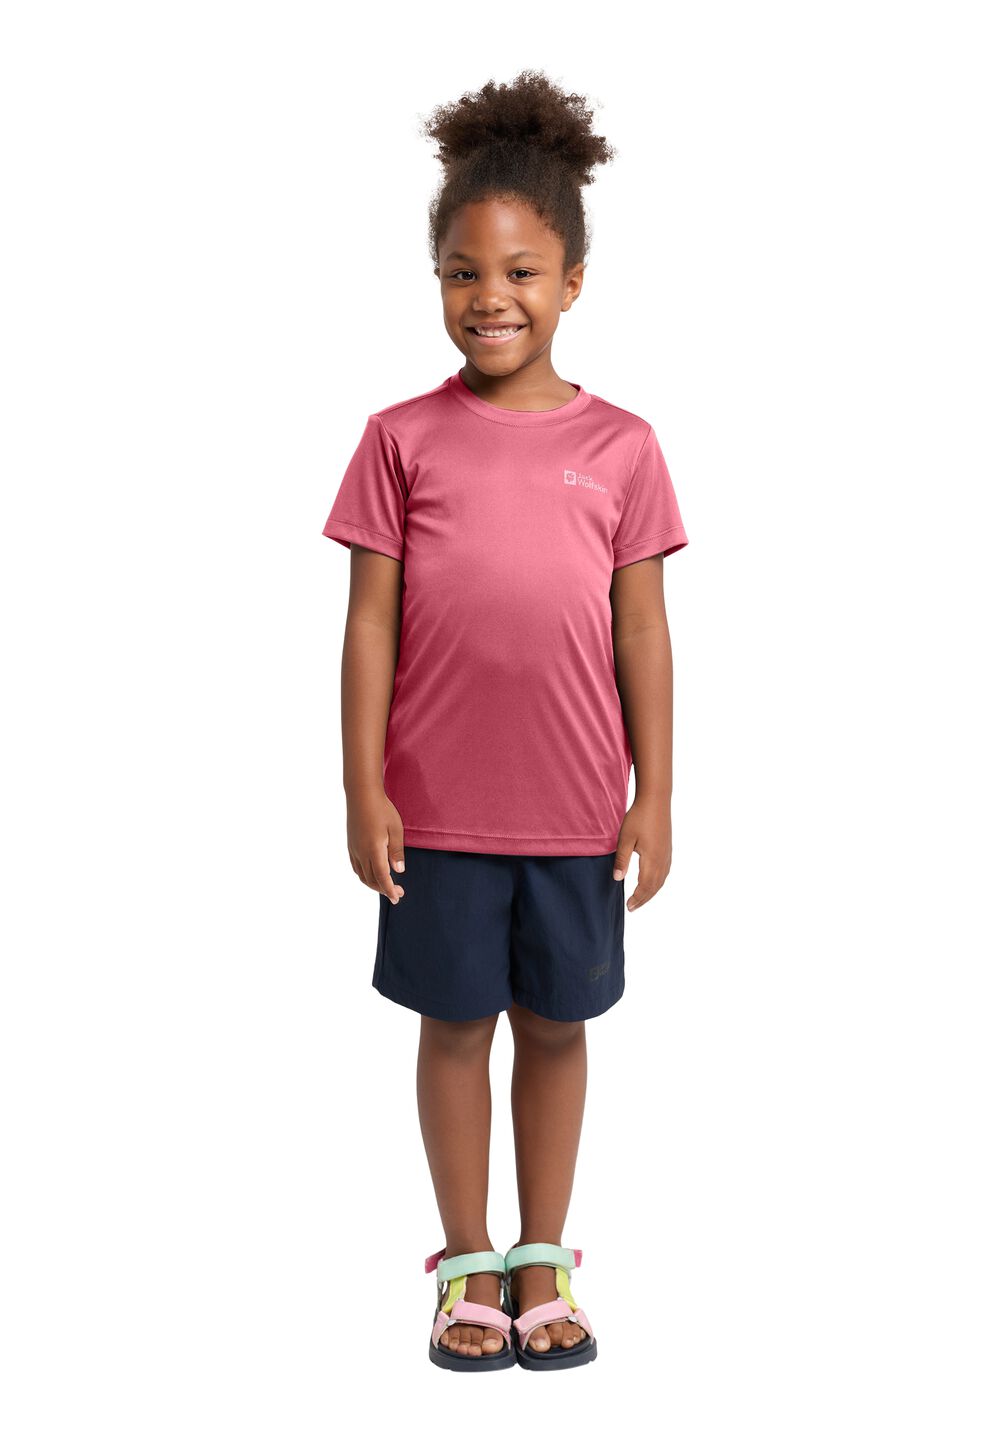 Jack Wolfskin Funktionsshirt Kinder Active Solid T-Shirt Kids 128 soft pink soft pink von Jack Wolfskin